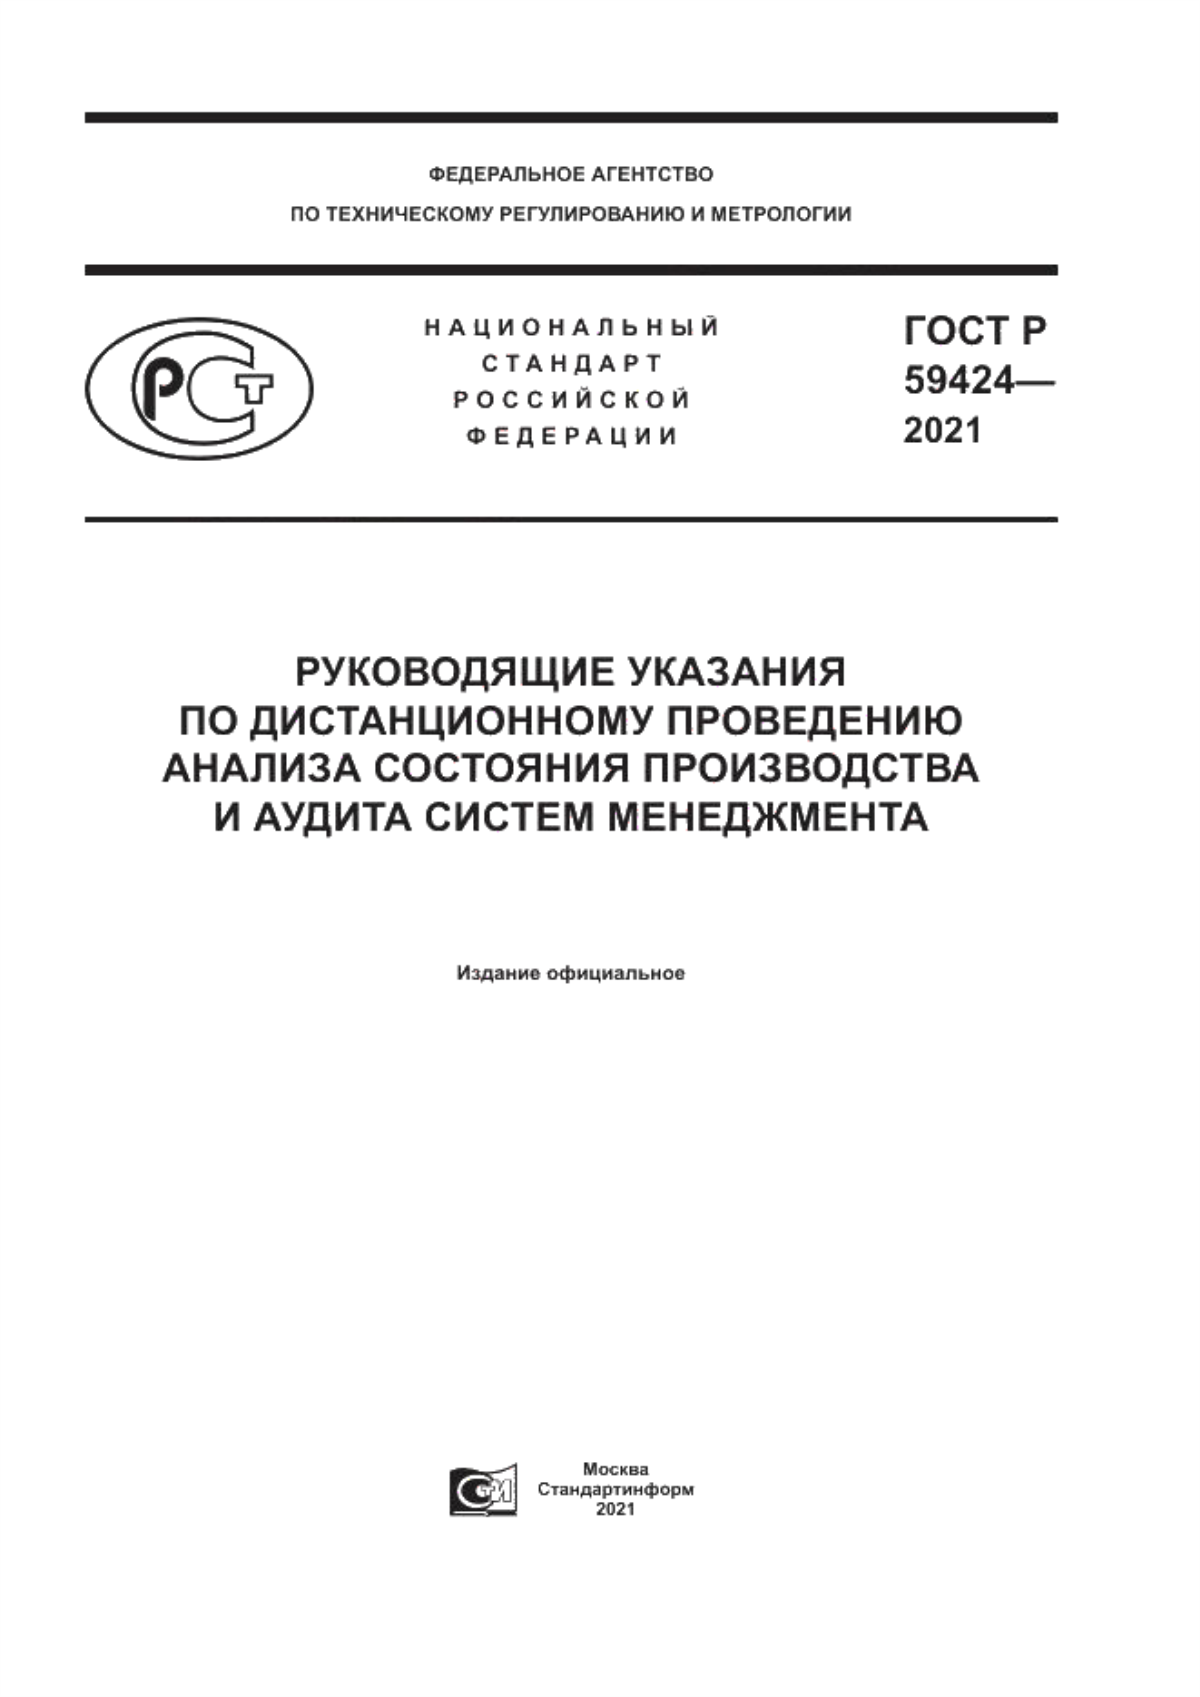 ГОСТ Р 59424-2021 Руководящие указания по дистанционному проведению анализа состояния производства и аудита систем менеджмента